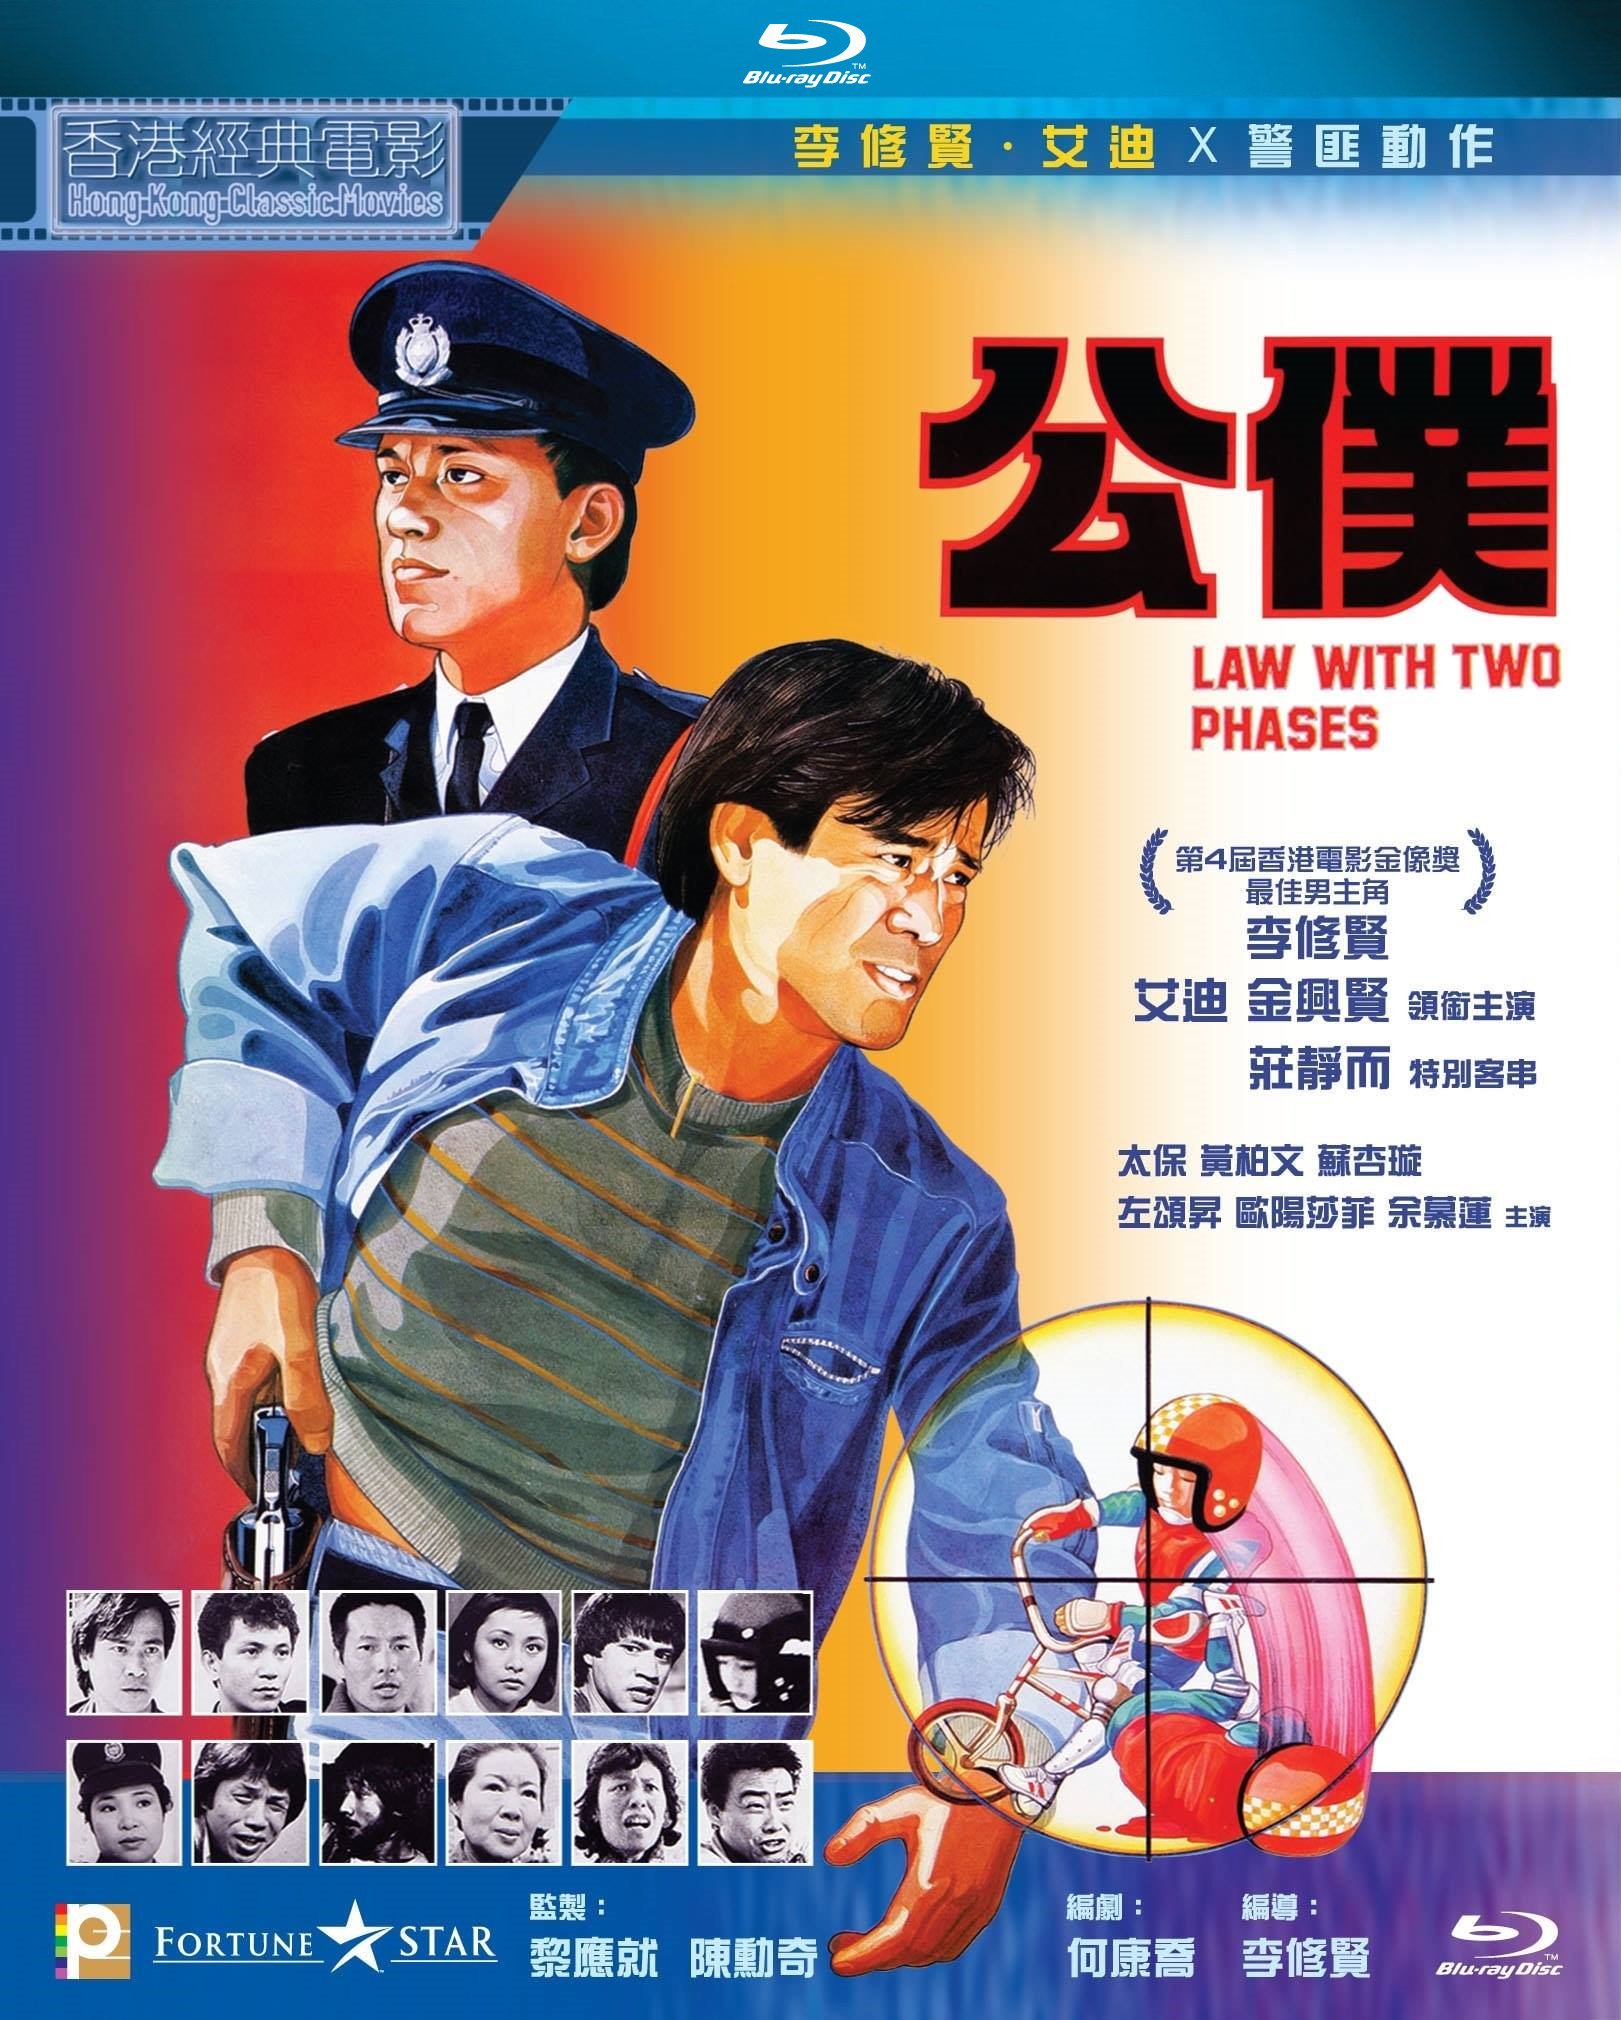 公僕 國粵雙語 原盤繁簡英SUP字幕 Law with Two Phases 1984 BluRay 1080p 2Audio TrueHD 5.1 x265.10bit-BeiTai